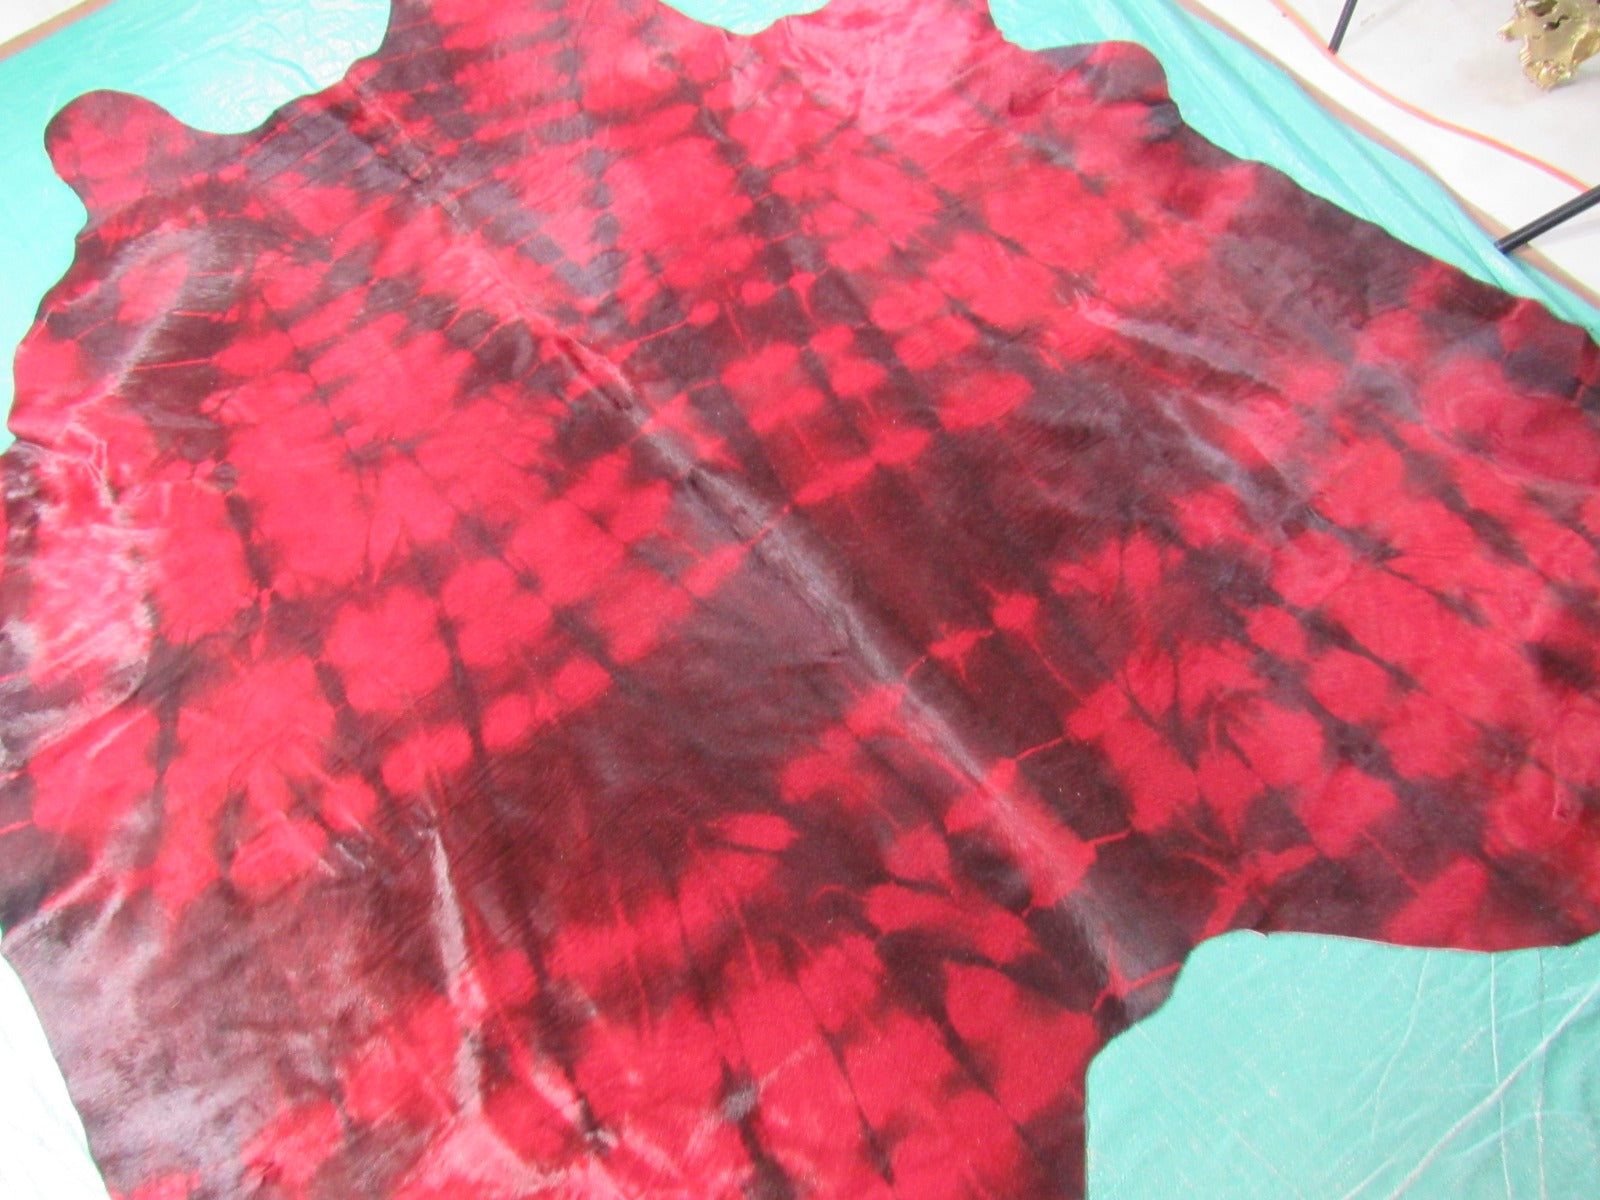 Red Tie Dye Cowhide Rug - Size: 7.2x7 feet C-1698